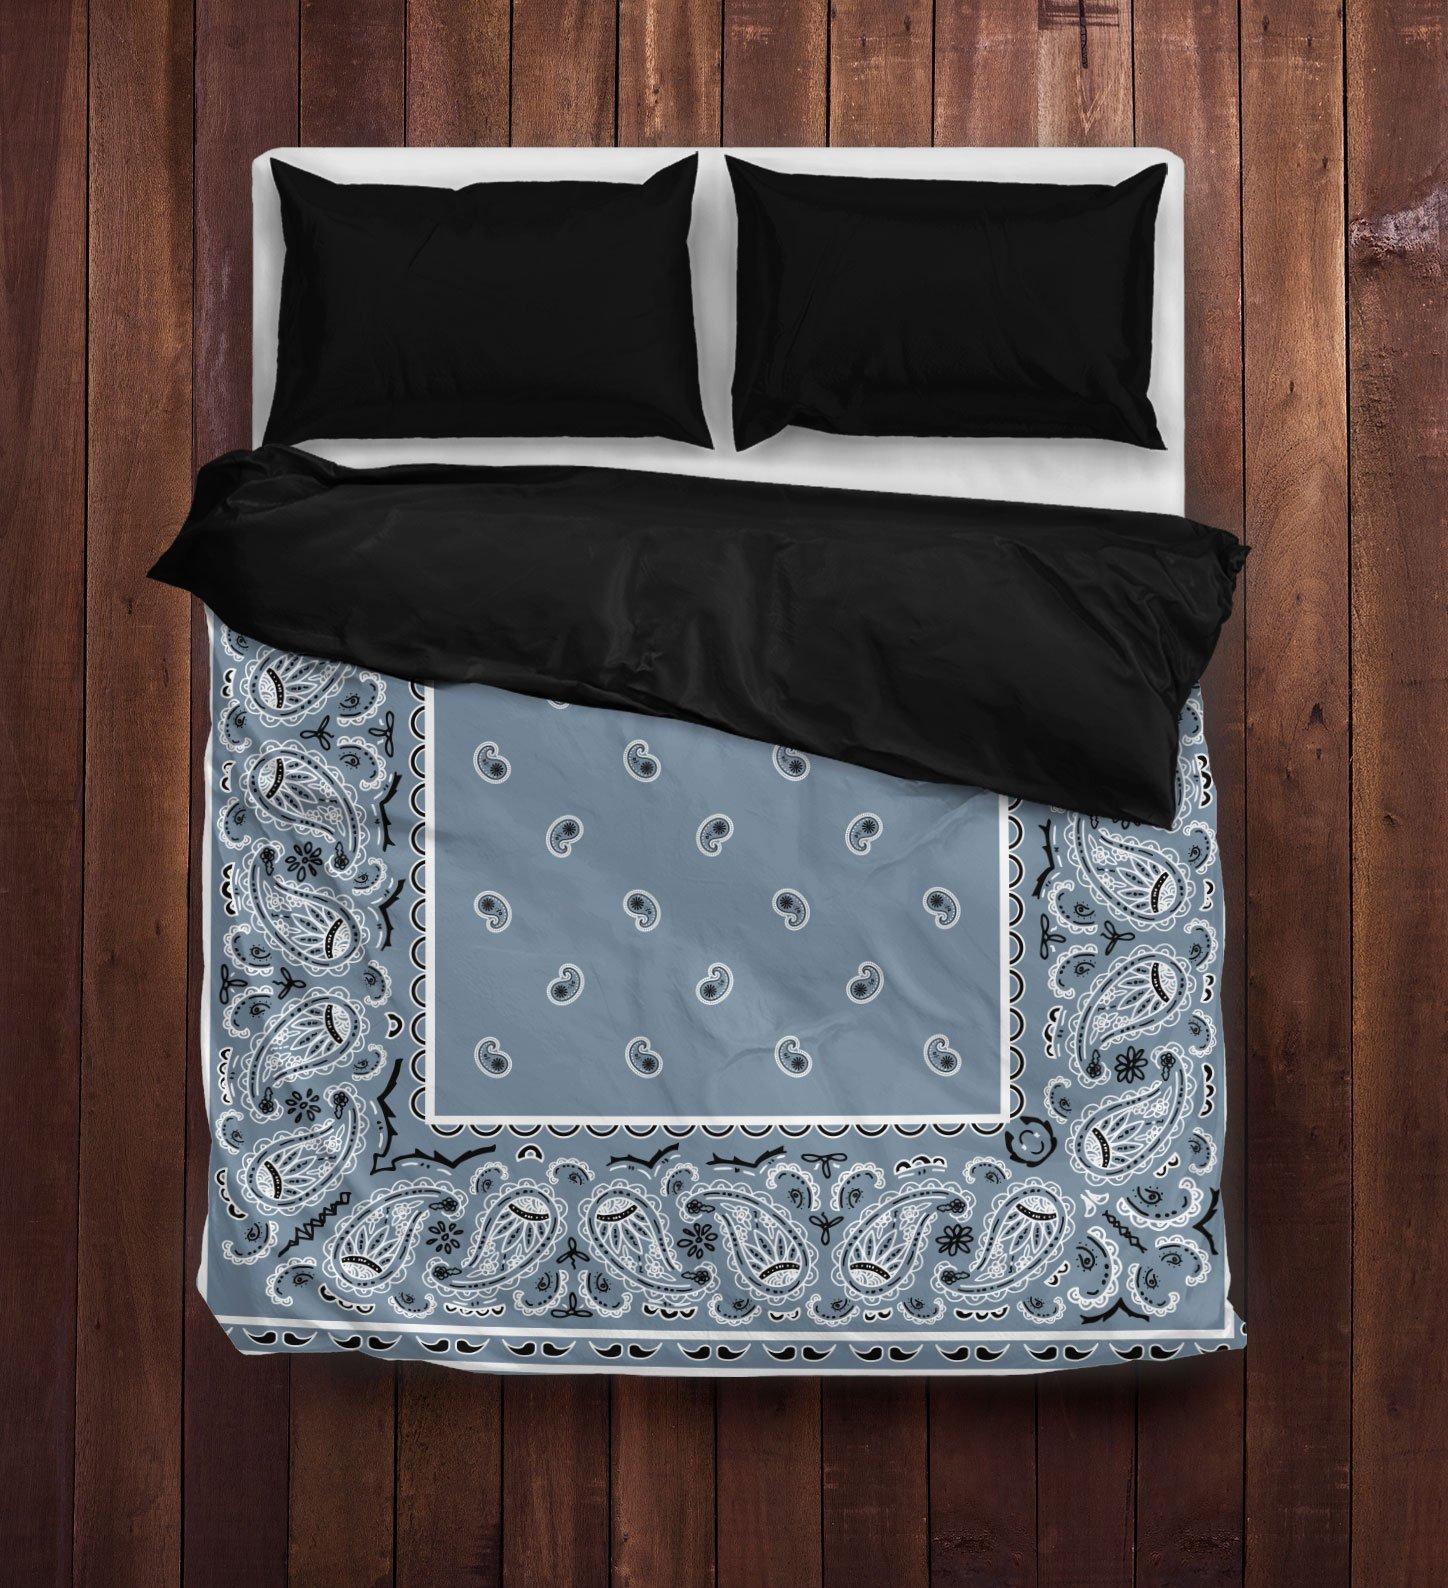 Slate blue bandana duvet cover bedding set - queen